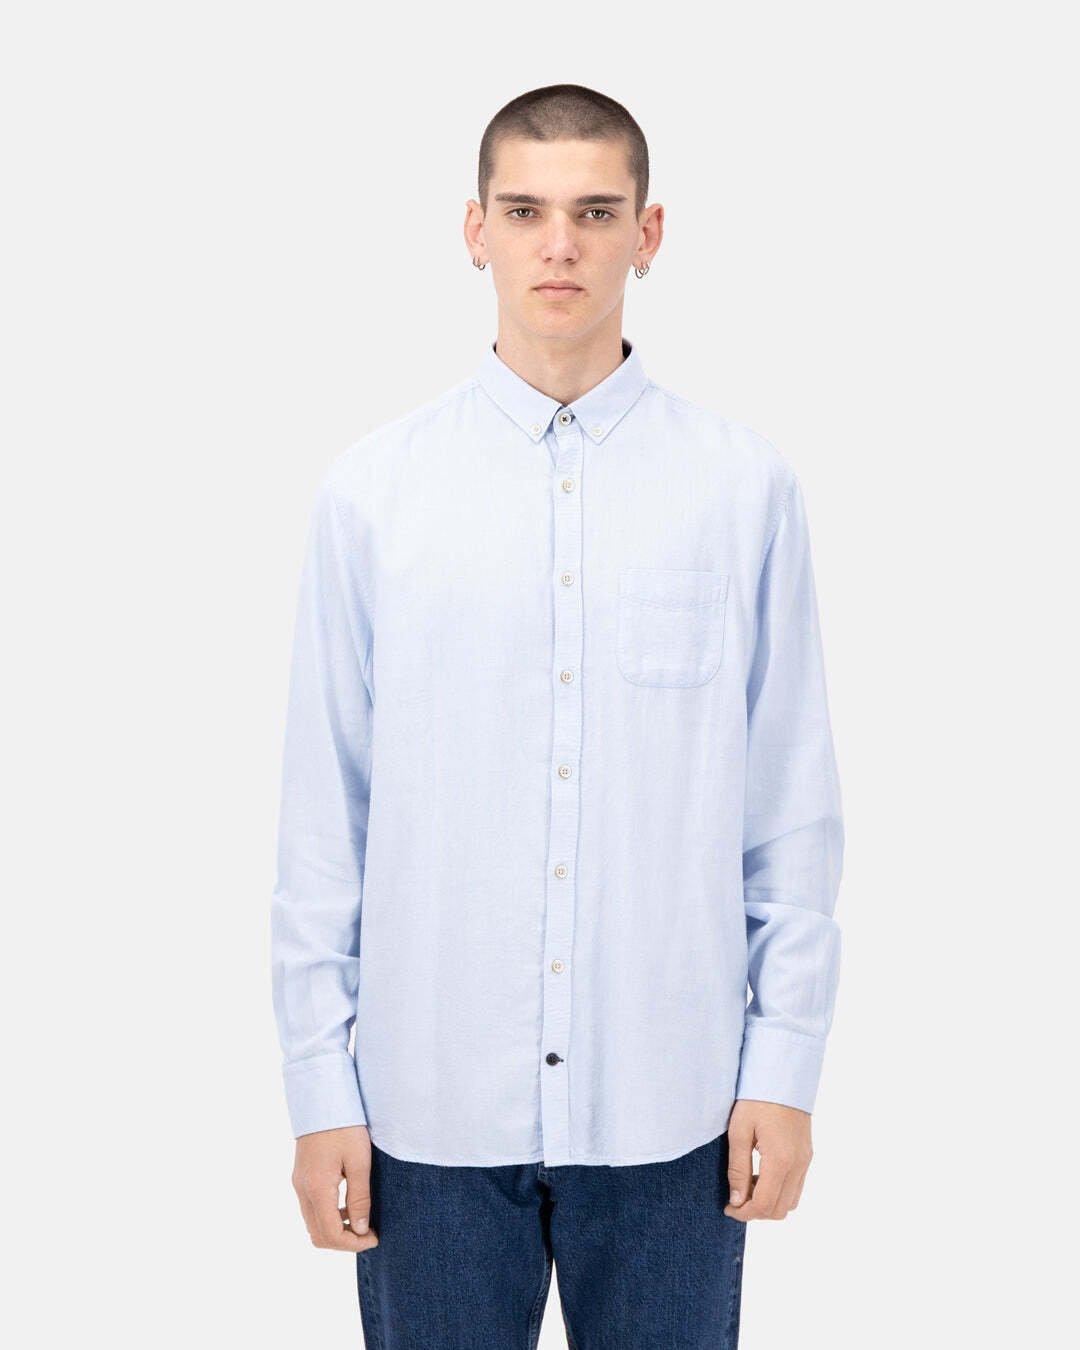 Hemden Shirt-brushed Twill Herren Hellblau M von Colours & Sons